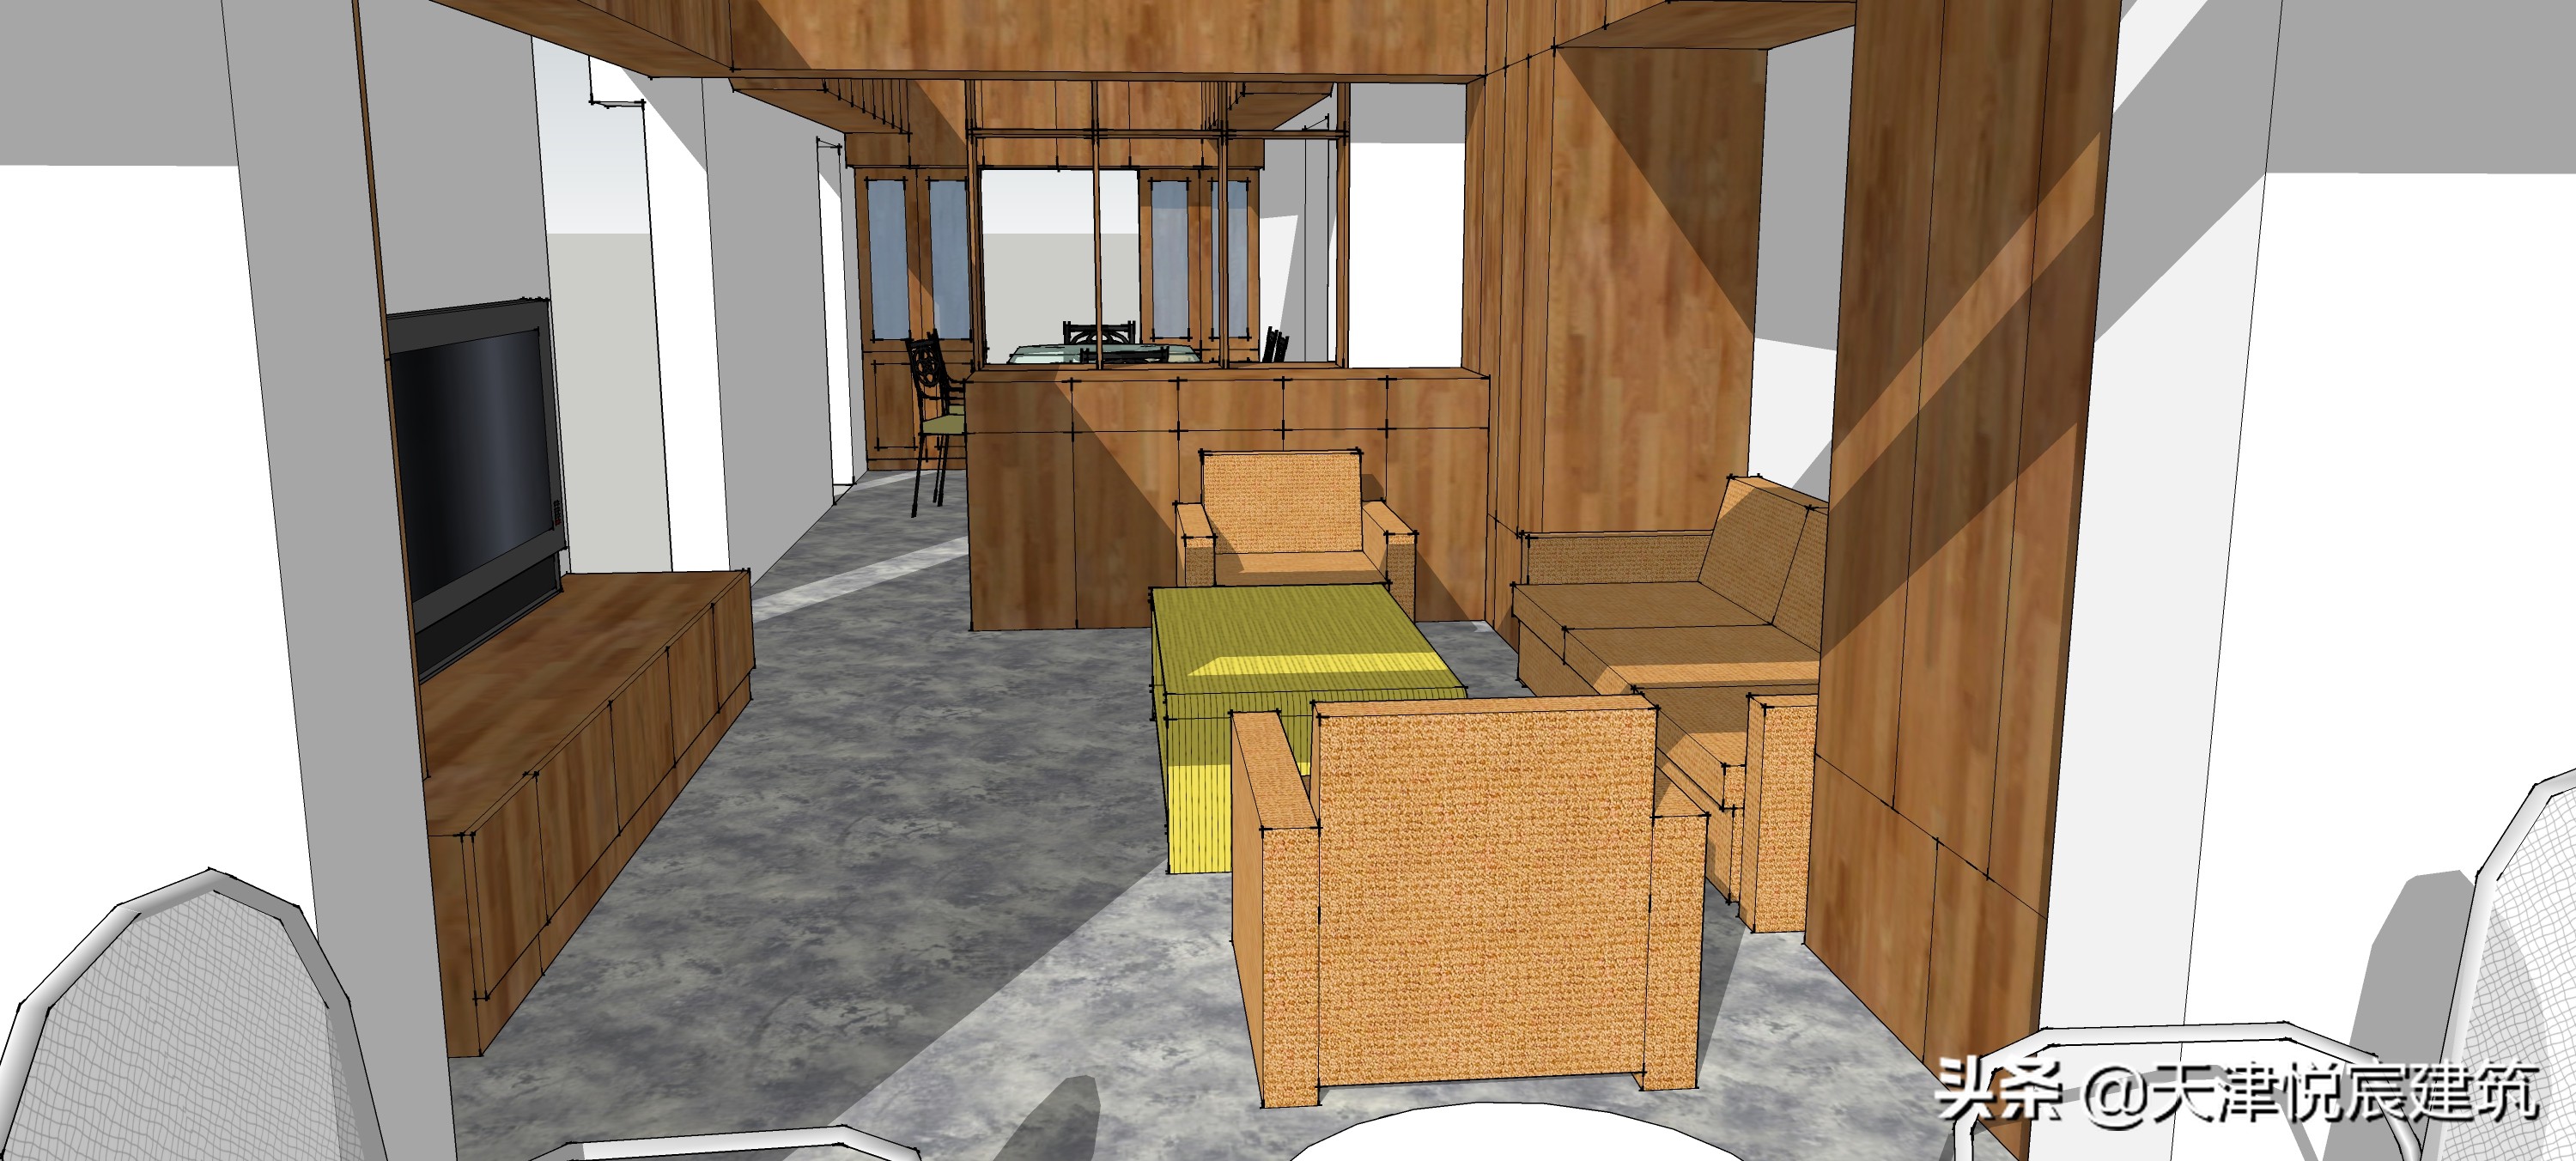 现代客厅中如何打造中式空间